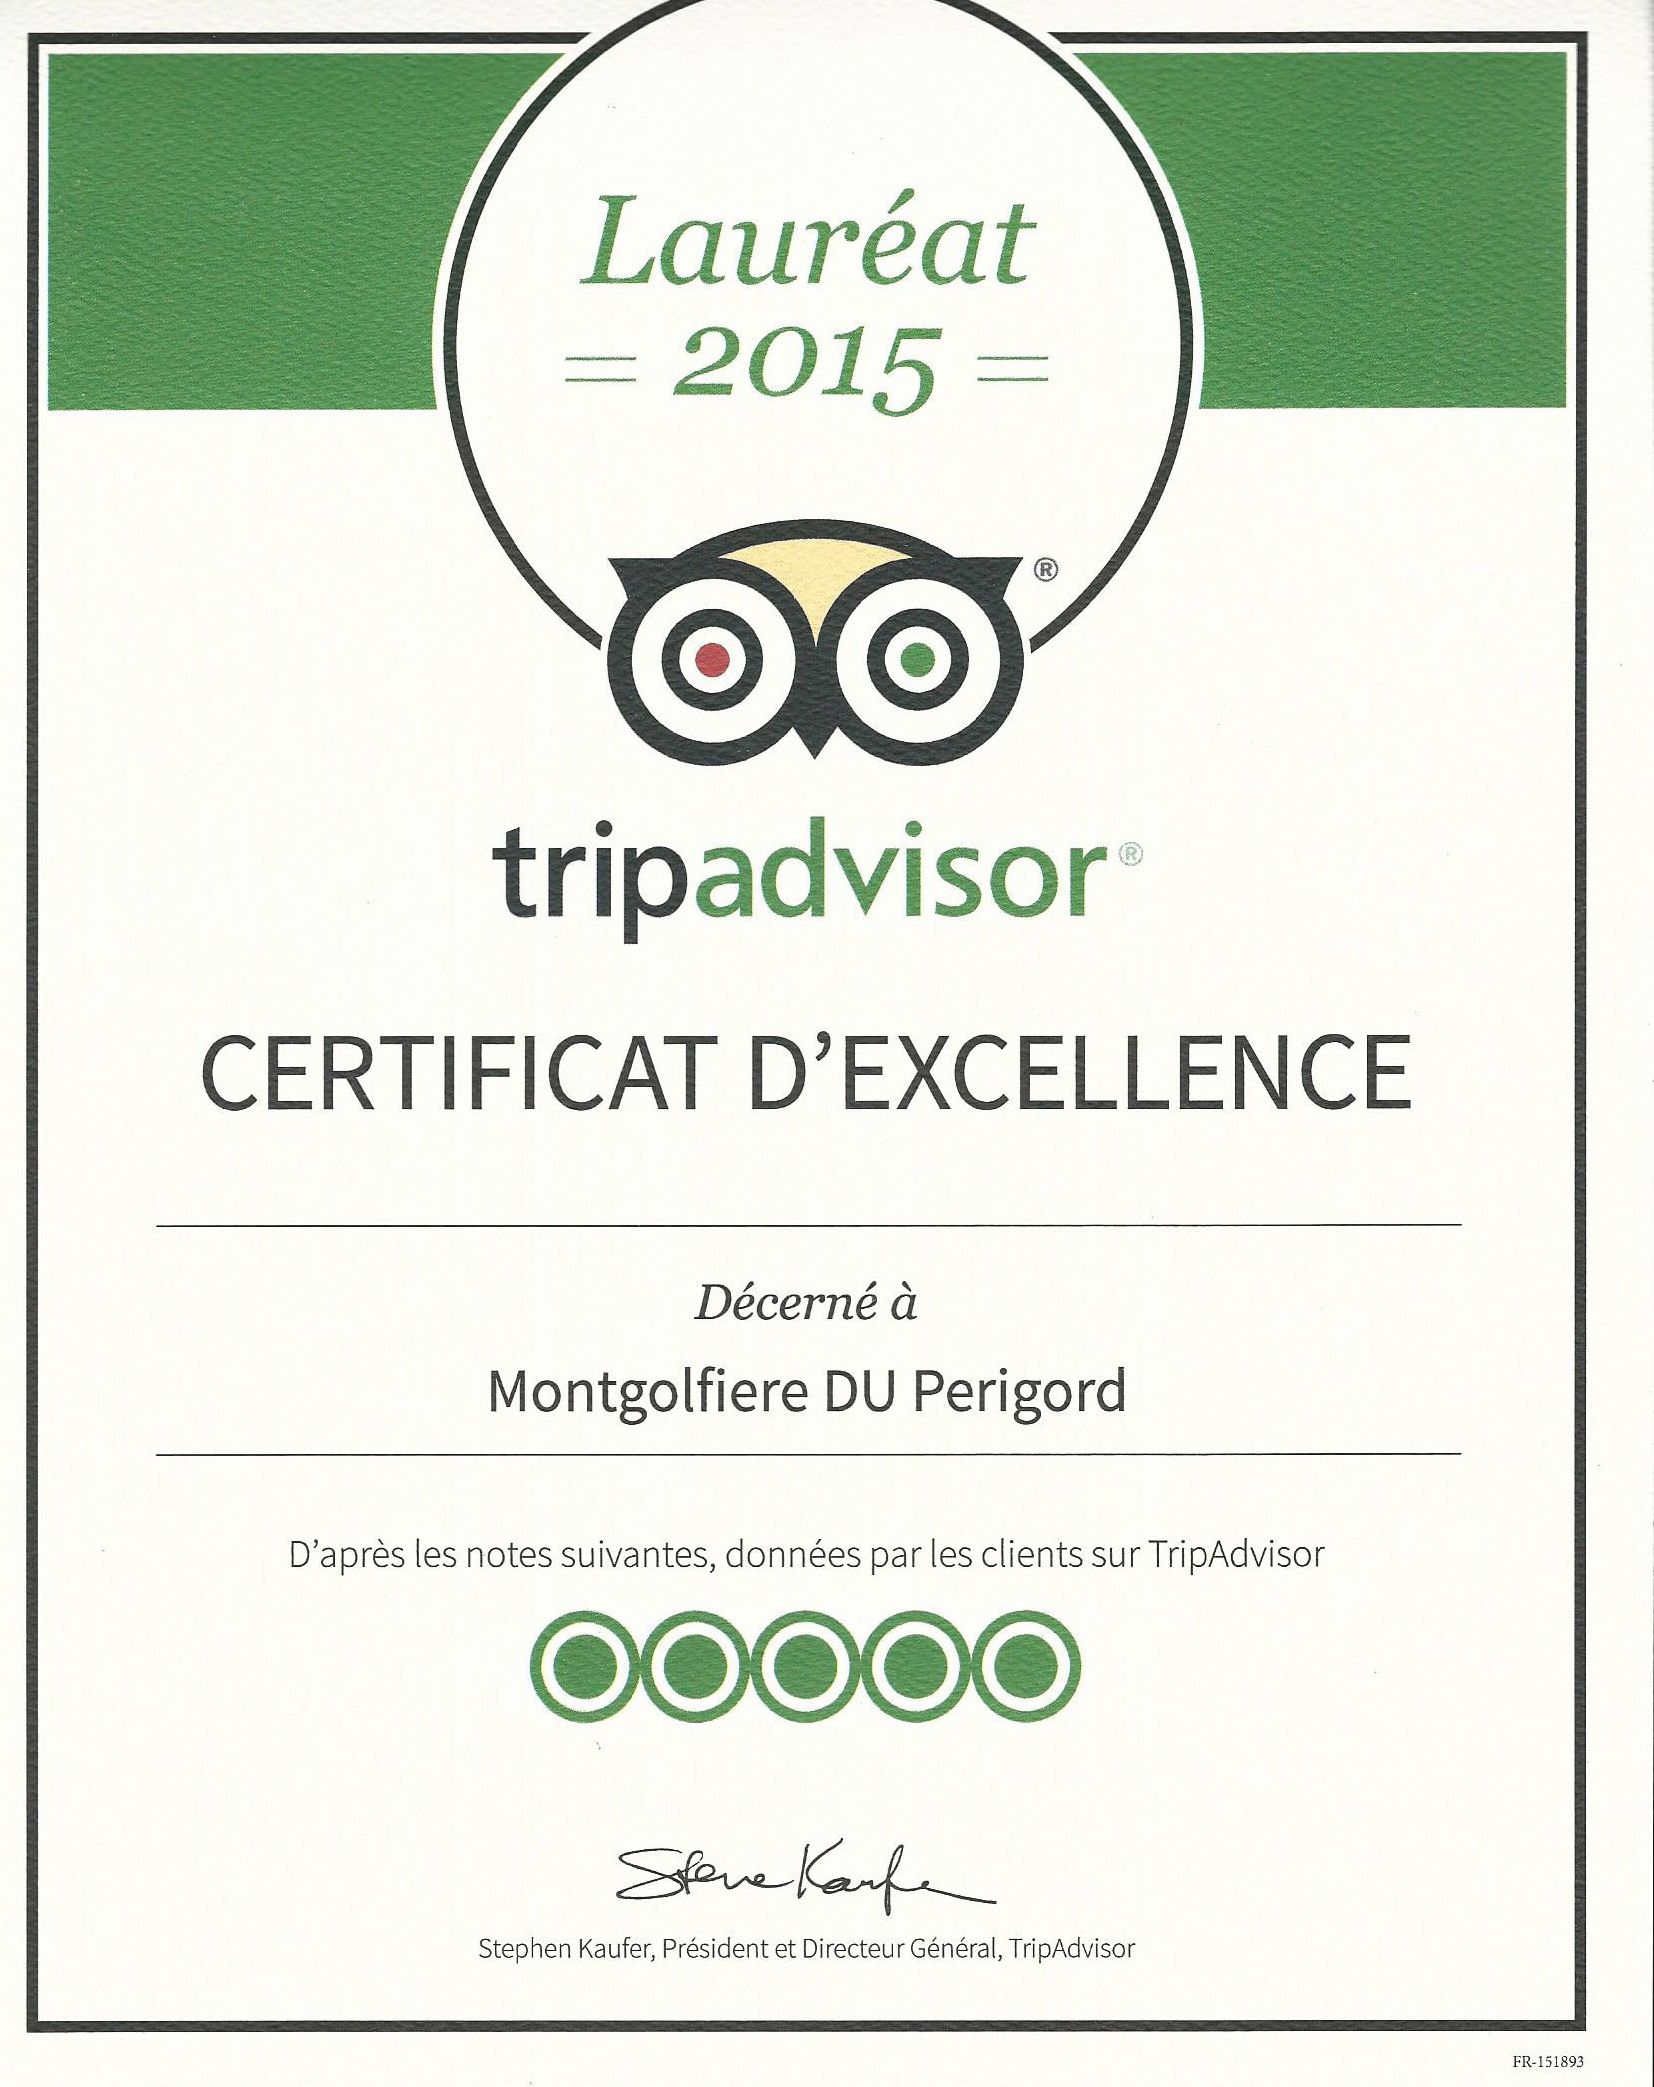 Image du certificat d'excellence Tripadvisor 2015 décerné aux Montgolfières du Périgord